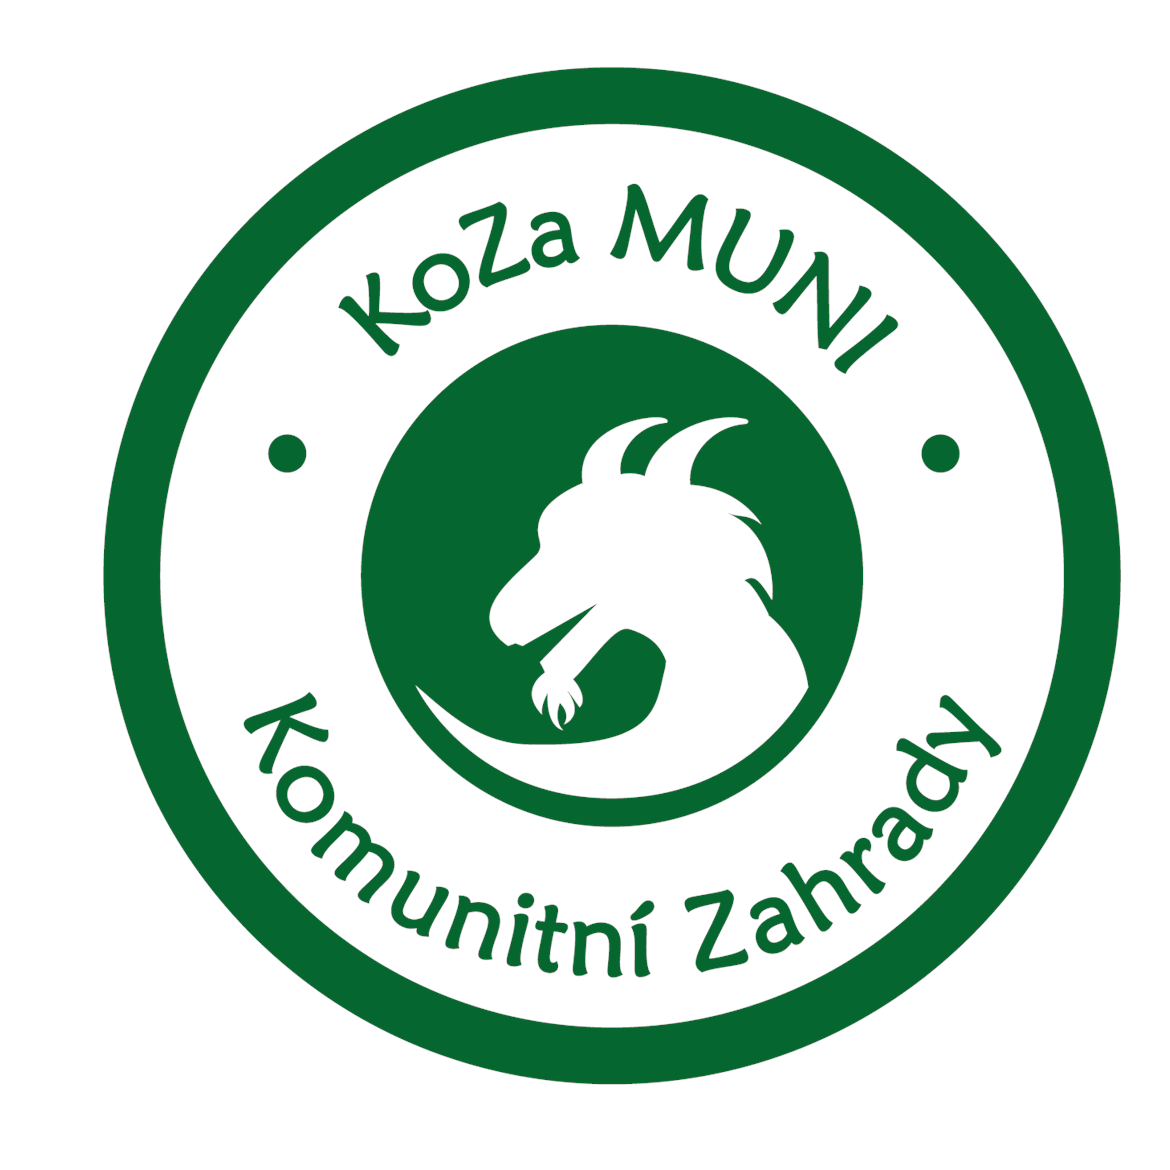 Spolek pro komunitní zahrady (KoZa MUNI) 